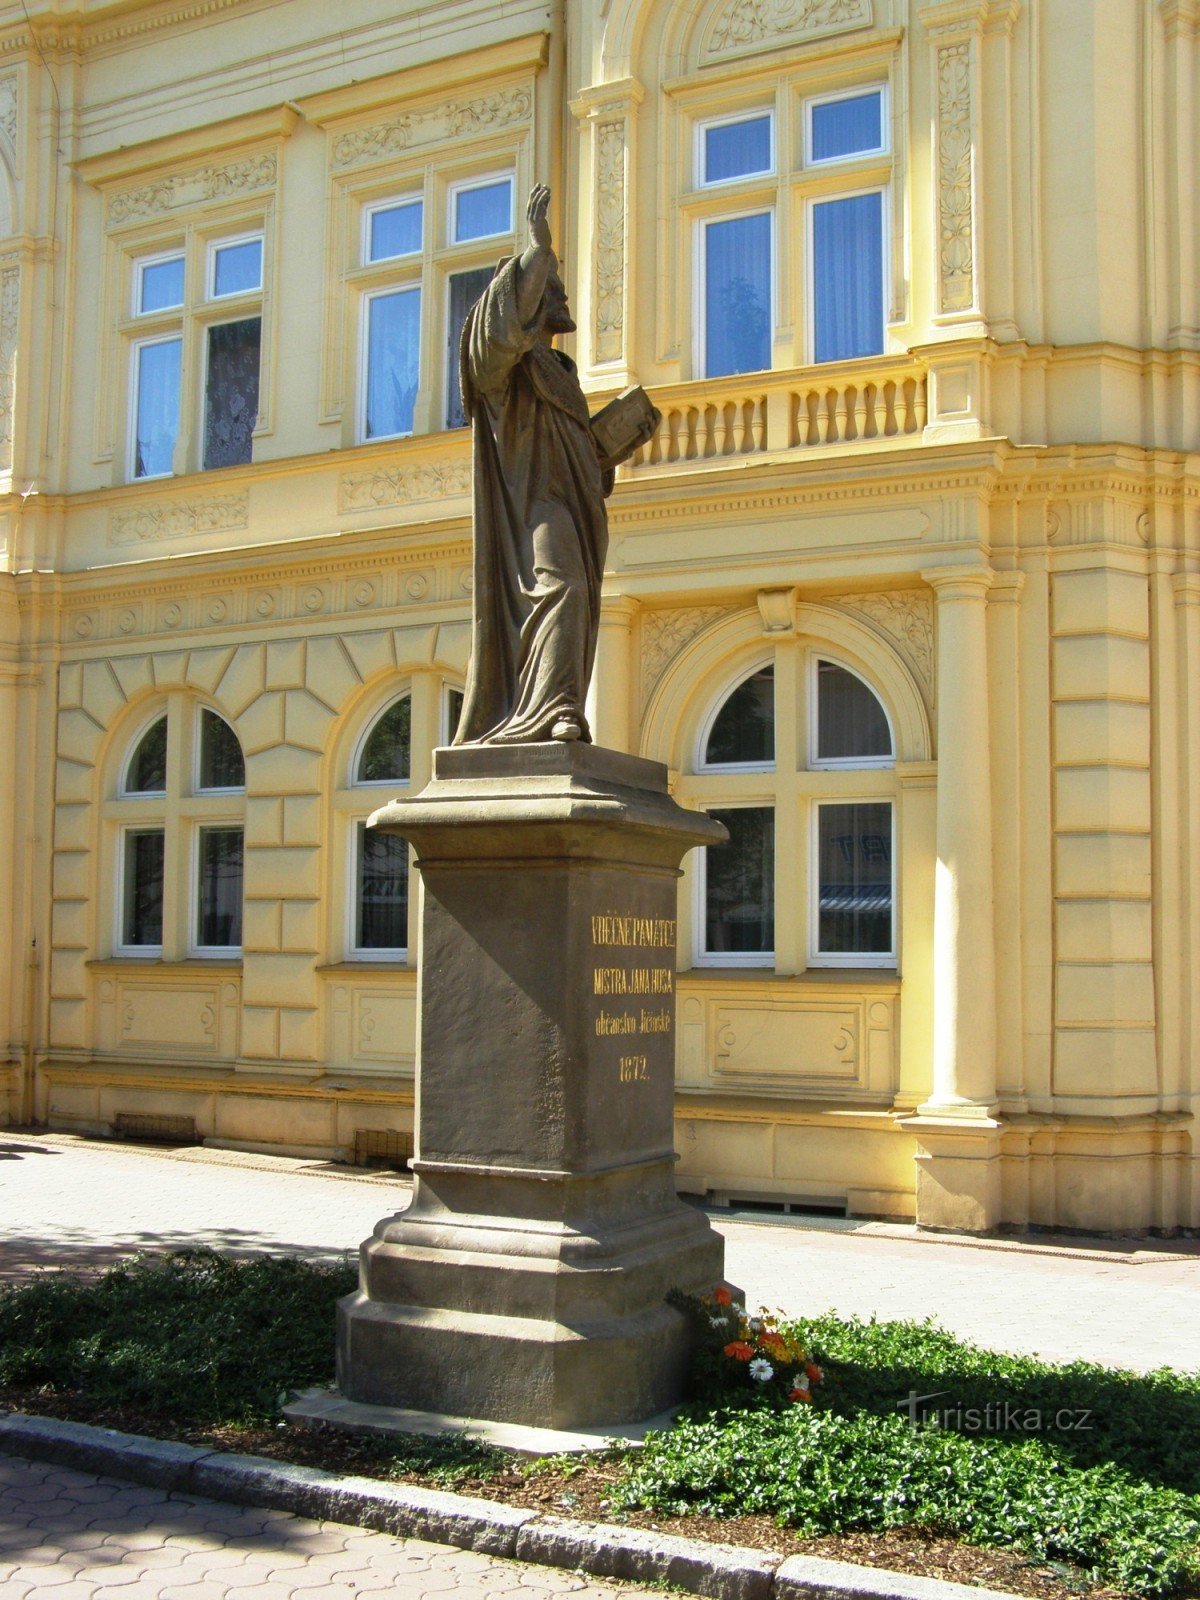 Jičín - monumento ao Mestre Jan Hus